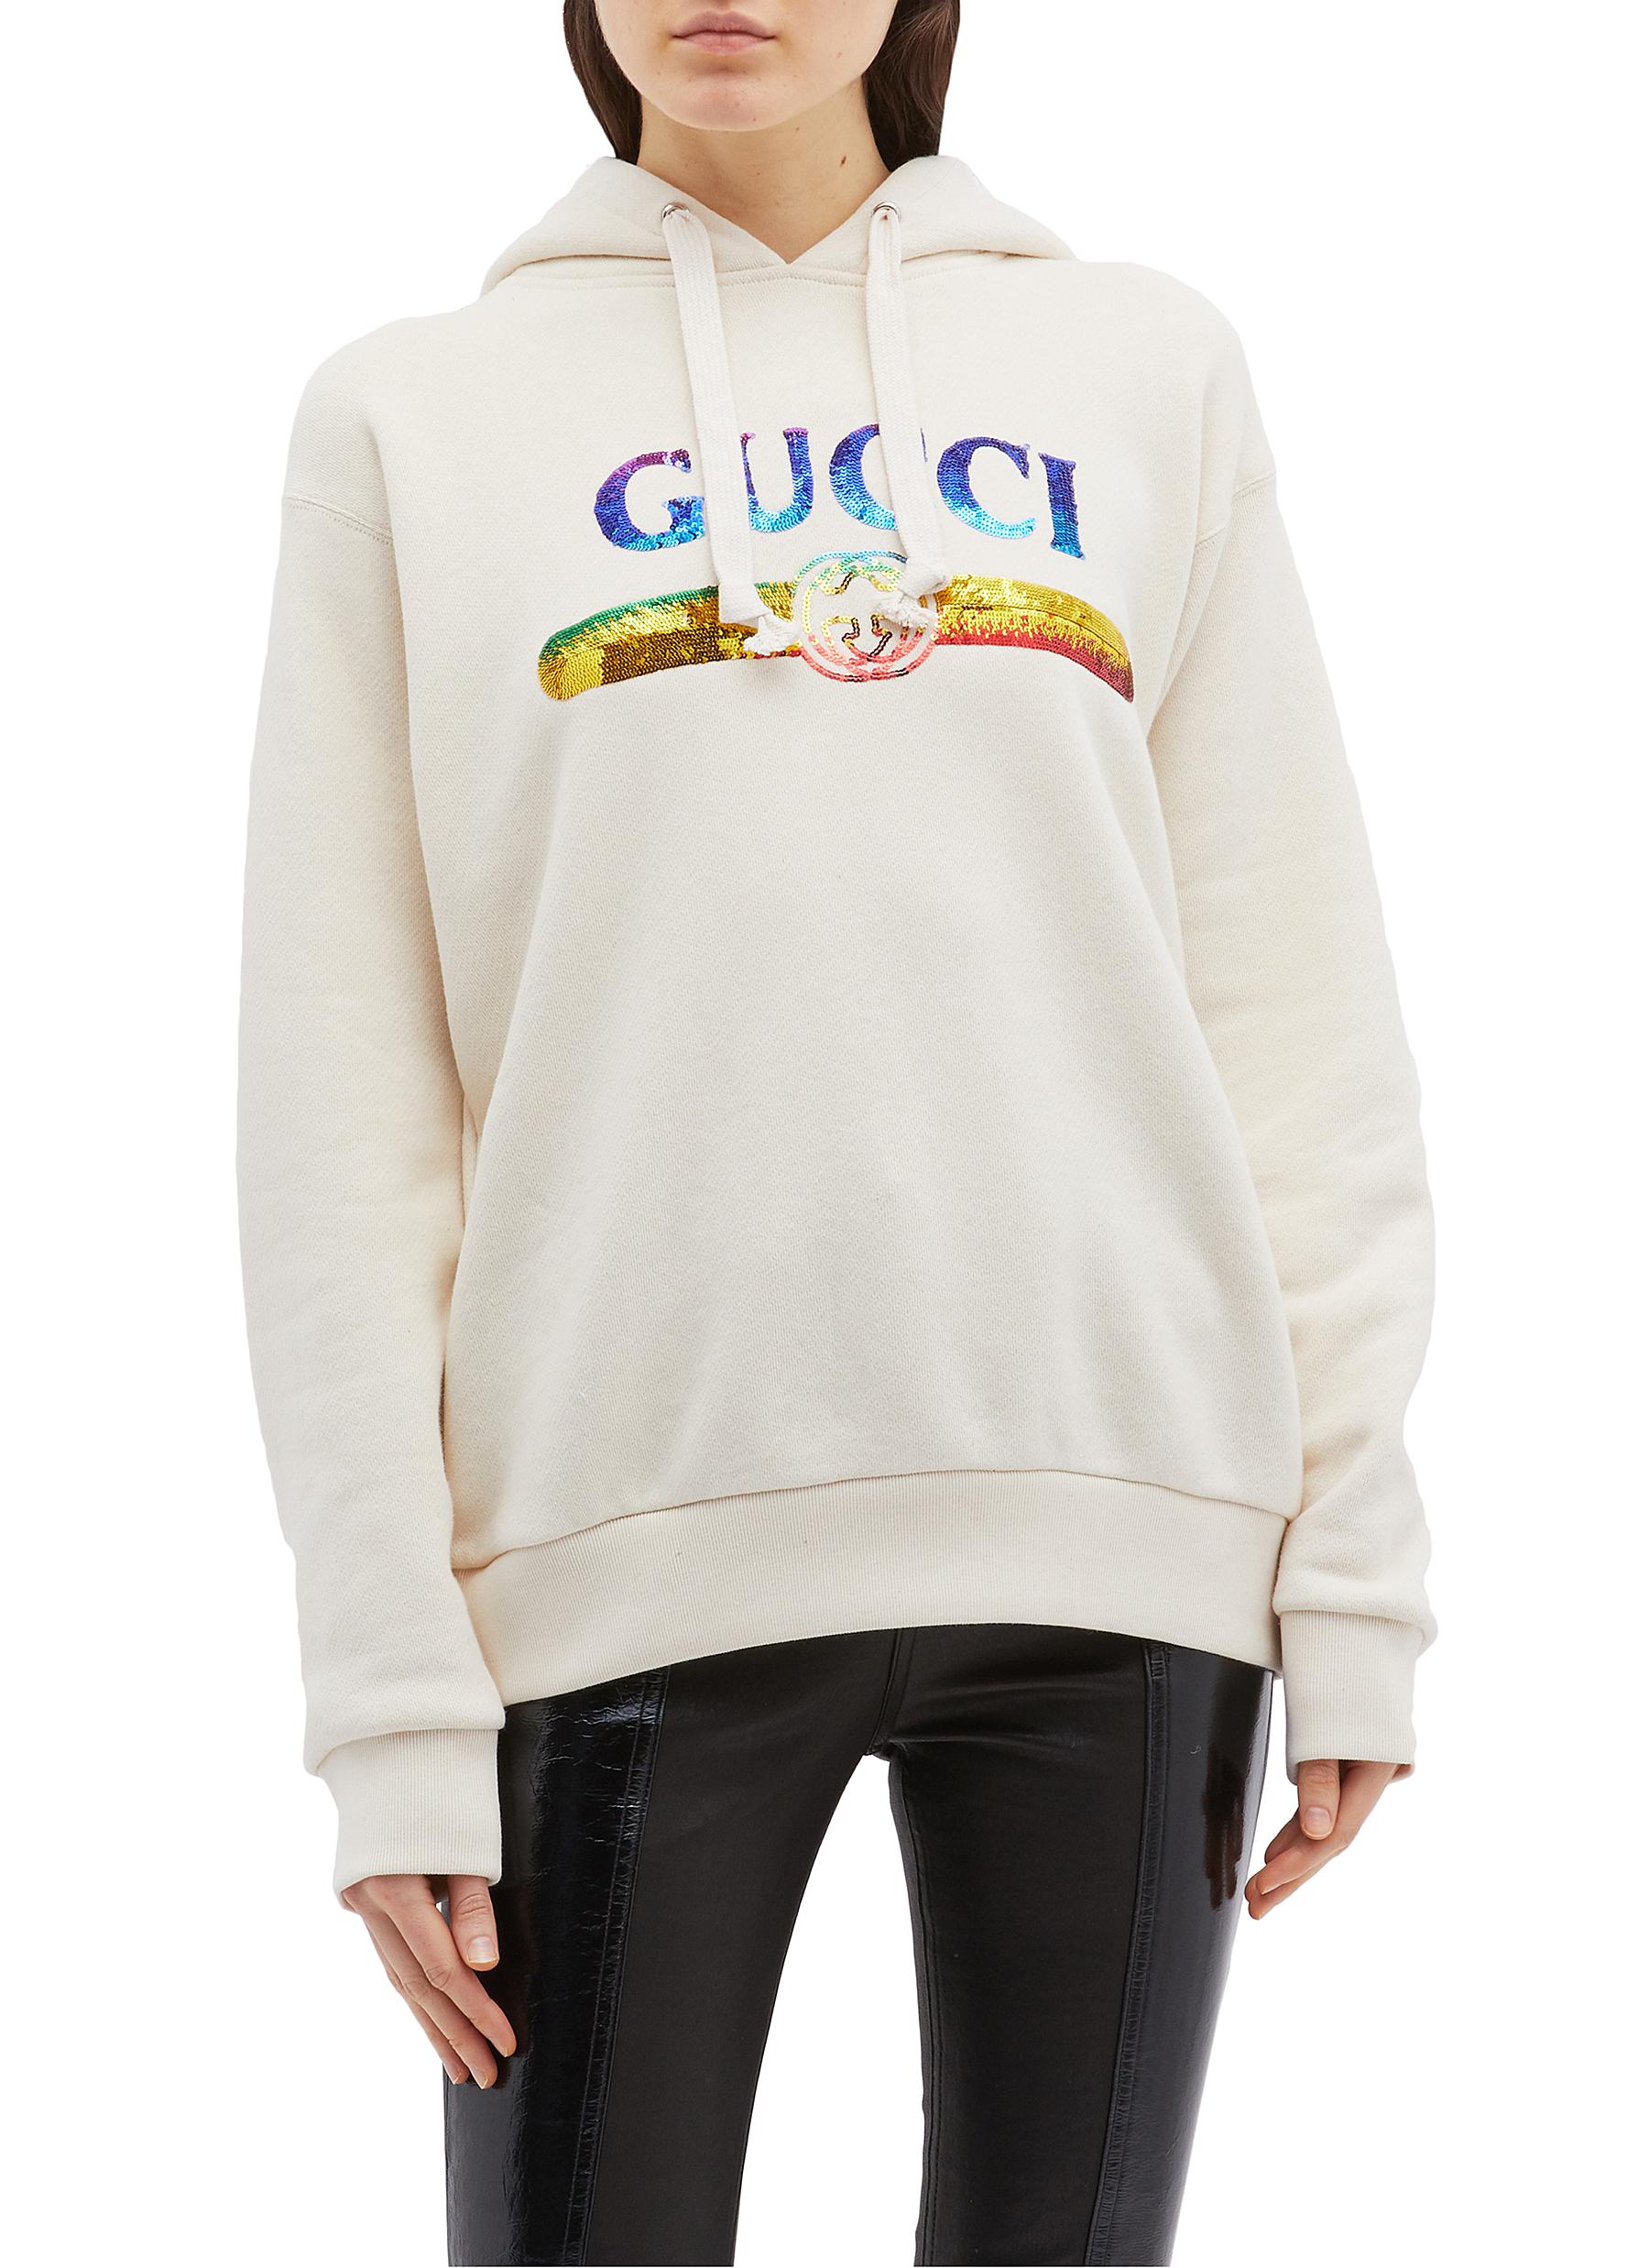 gucci sweatshirt rainbow